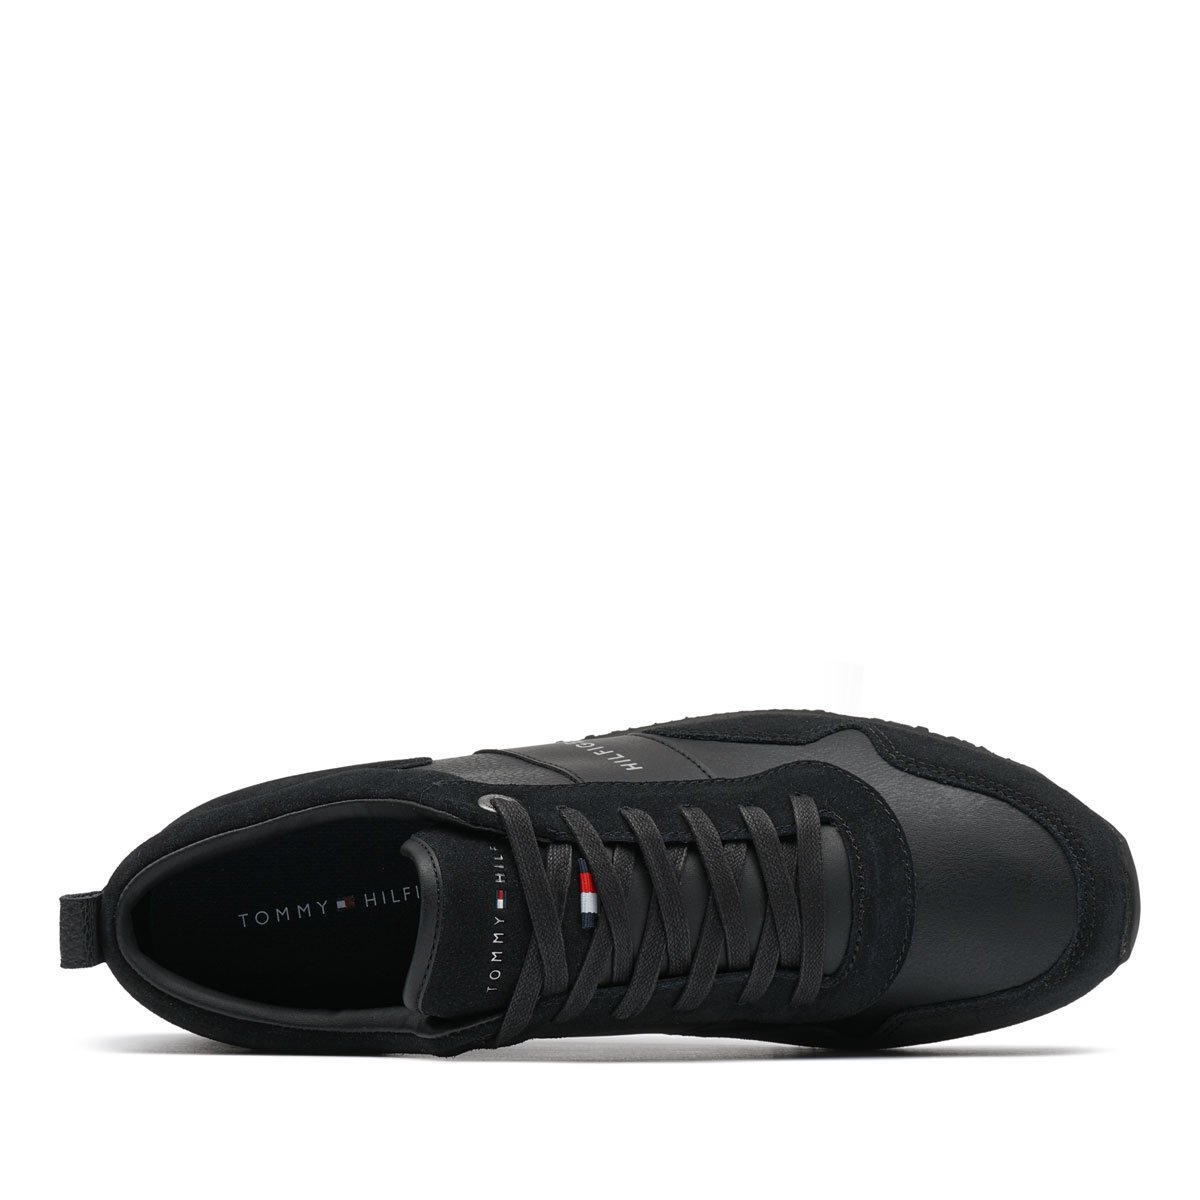 Tommy Hilfiger Iconic Leather Suede Mix Runner Мъжки спортни обувки FM0FM00924-990